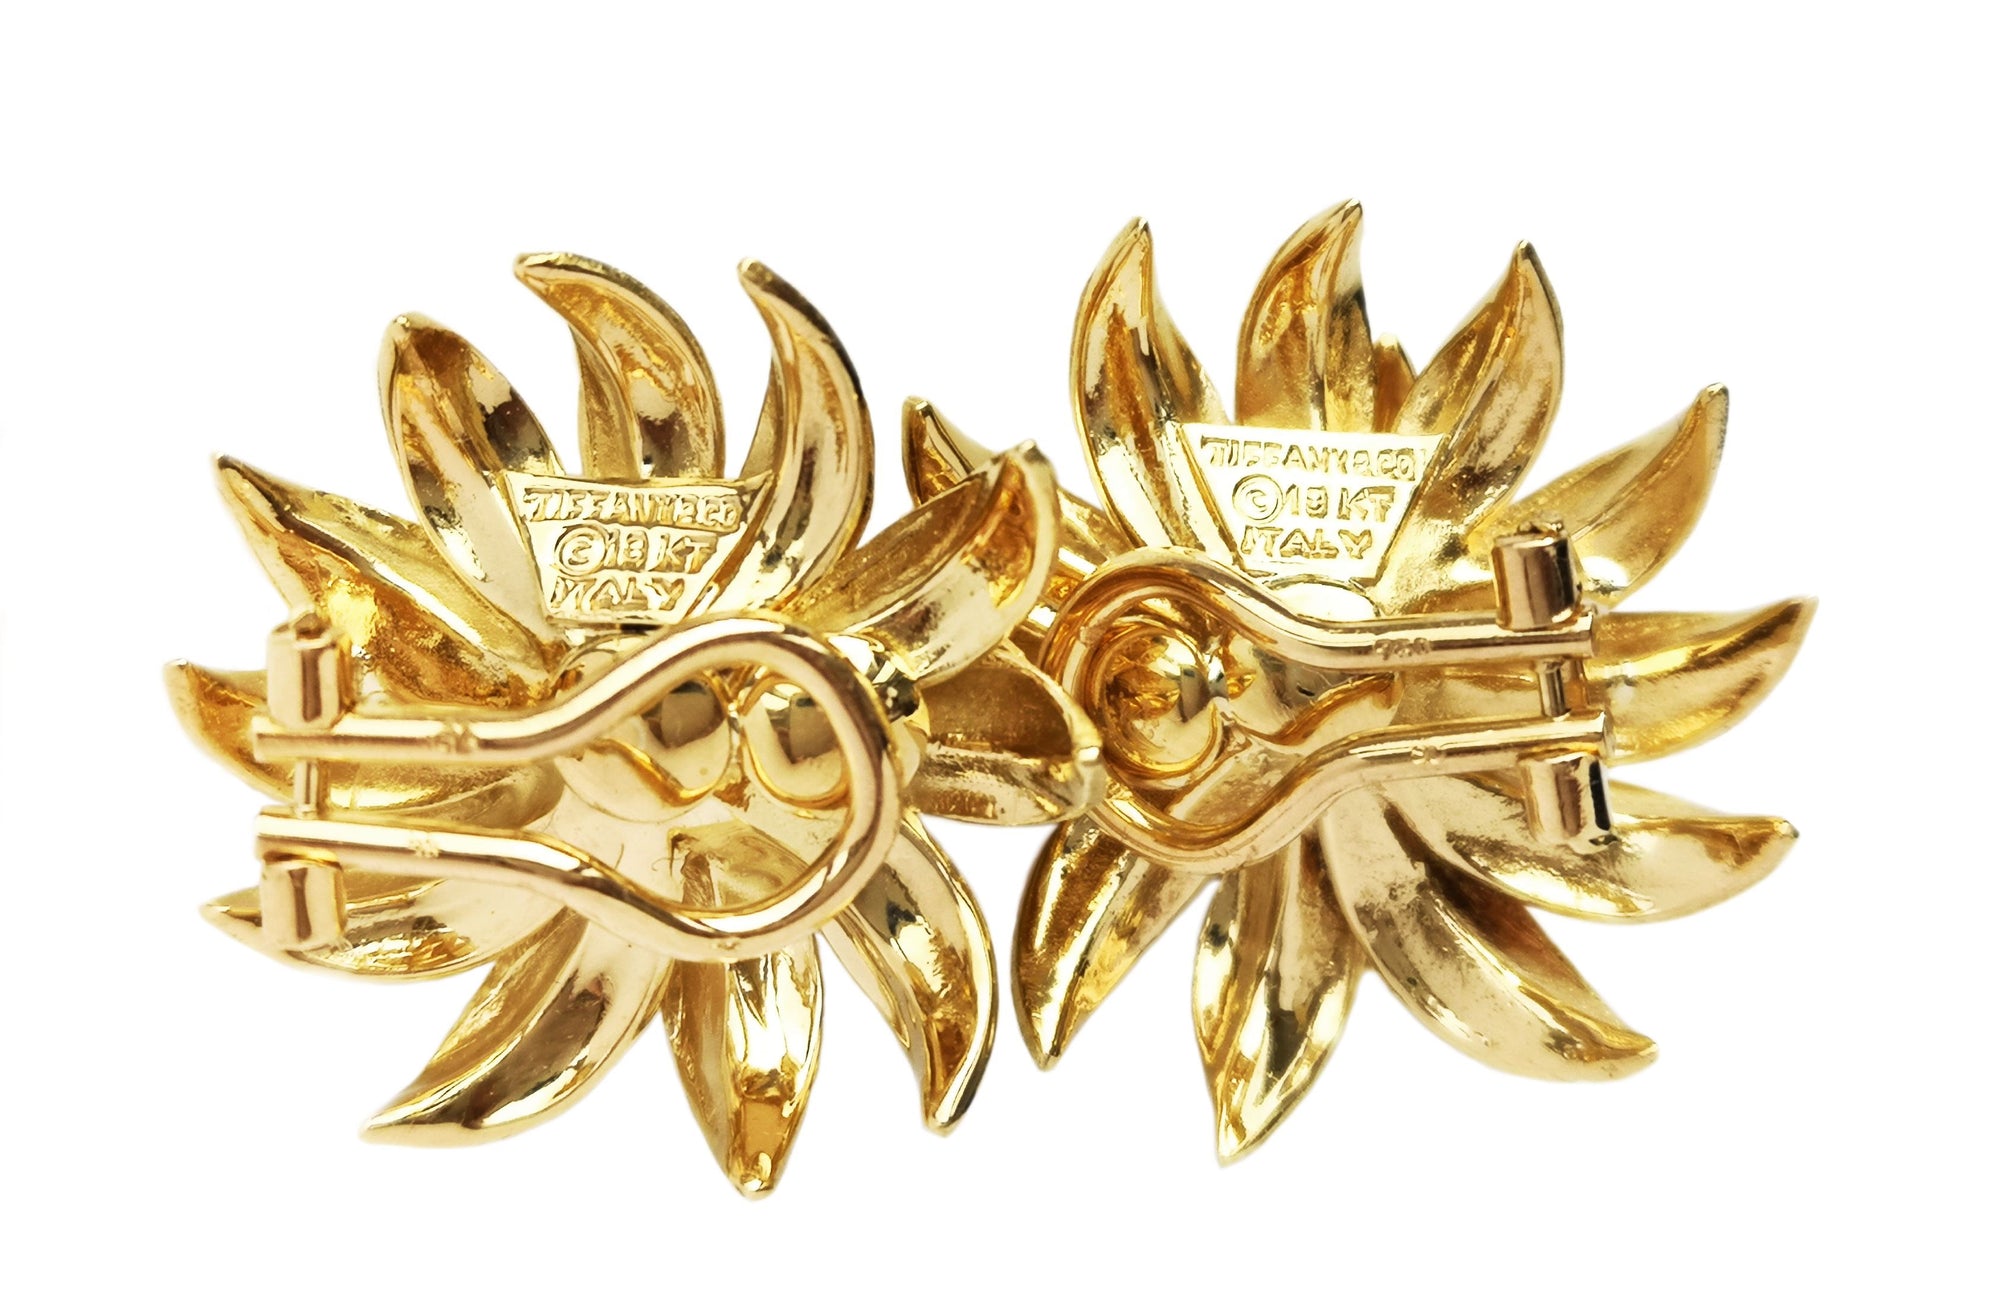 Vintage Tiffany & Co. 1960s Flower Earrings in 18K Gold